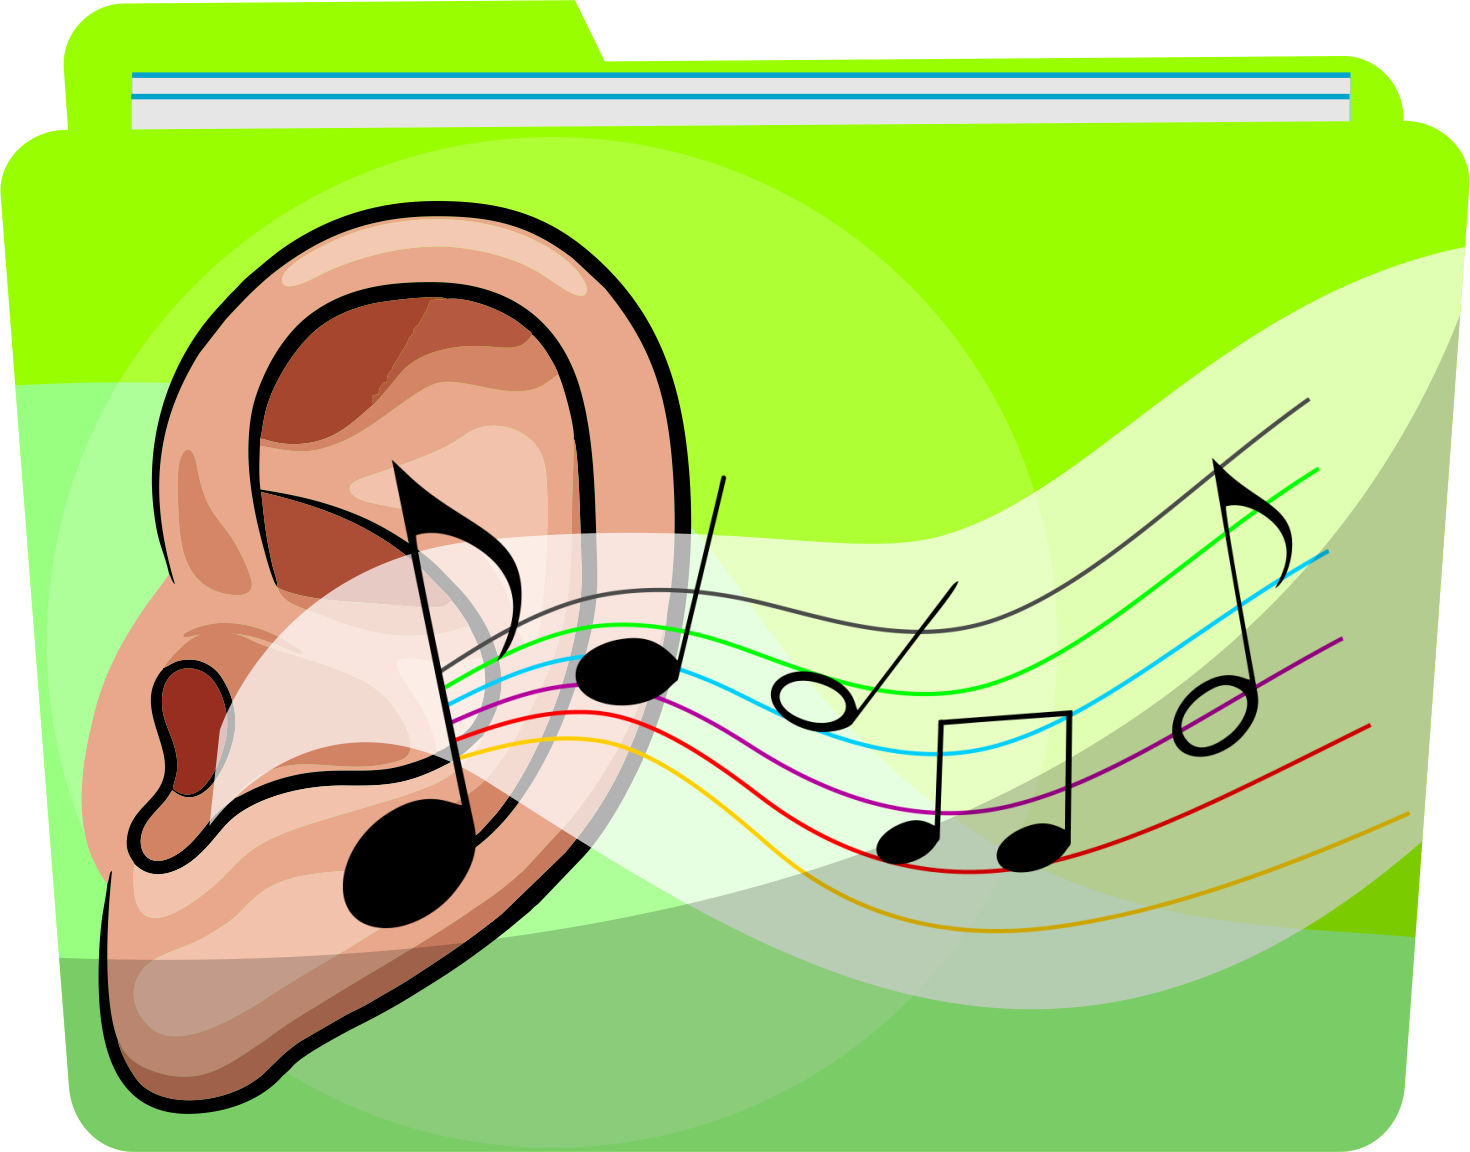 Ćwiczenia uwagi słuchowej - Co słyszysz? - Logopedia